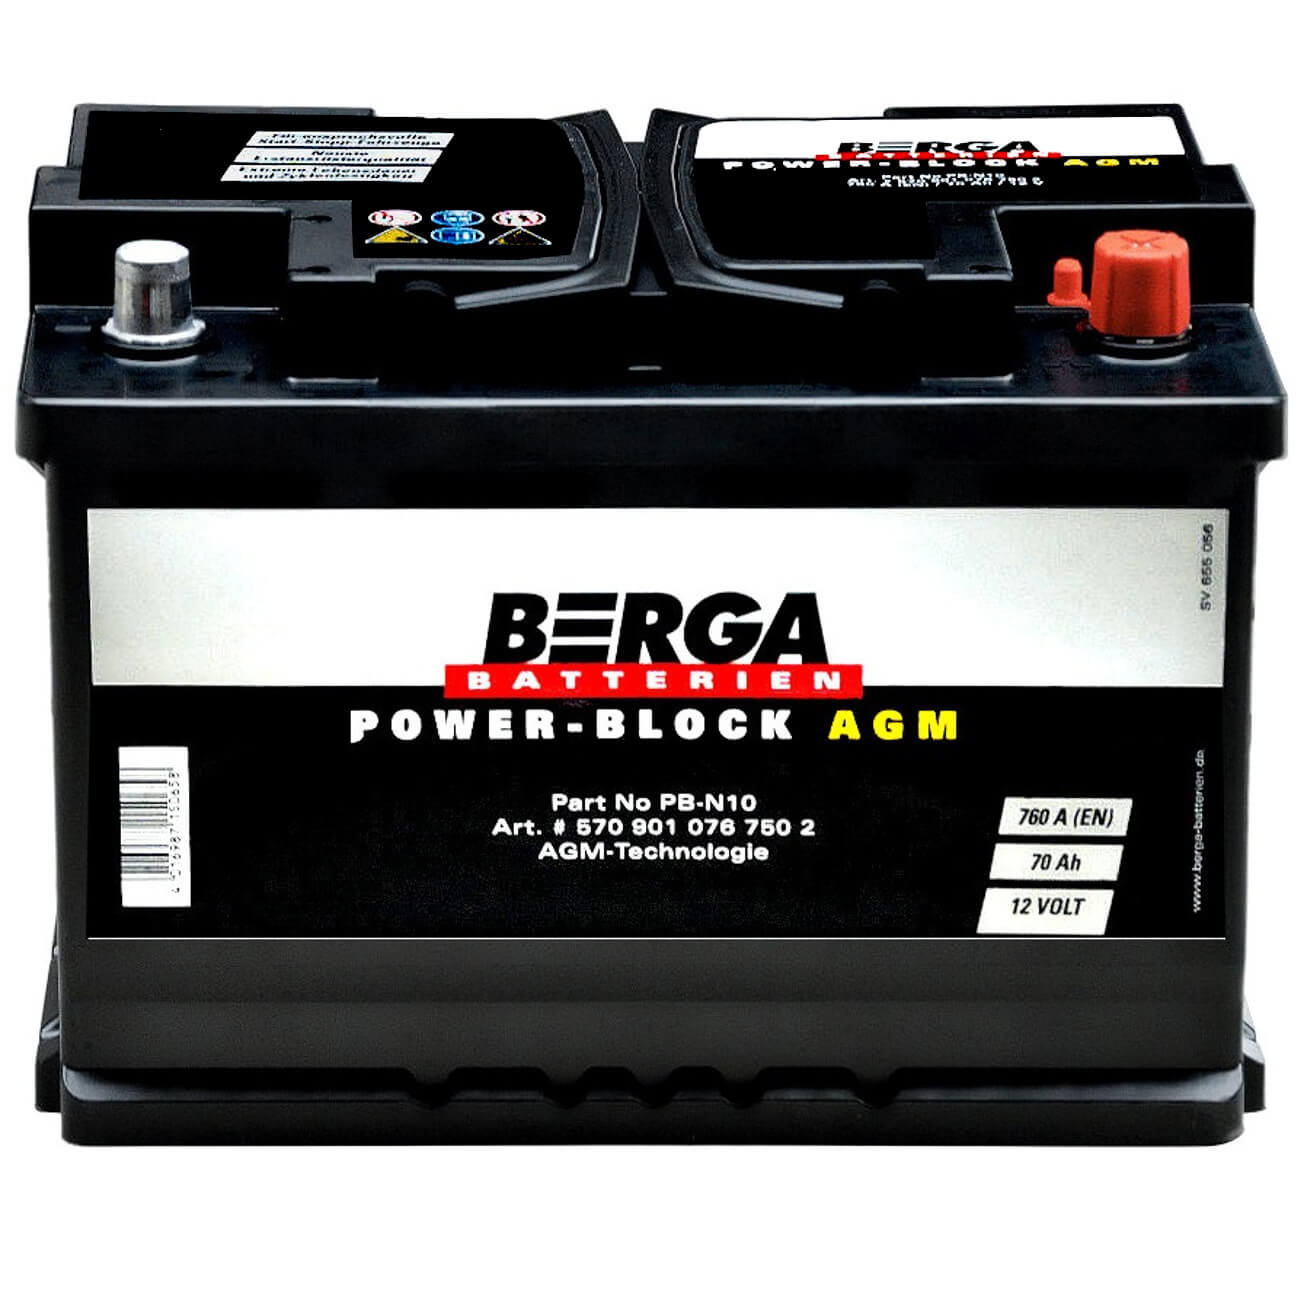 BERGA POWER-BLOCK AGM 12V 70Ah 760A/EN